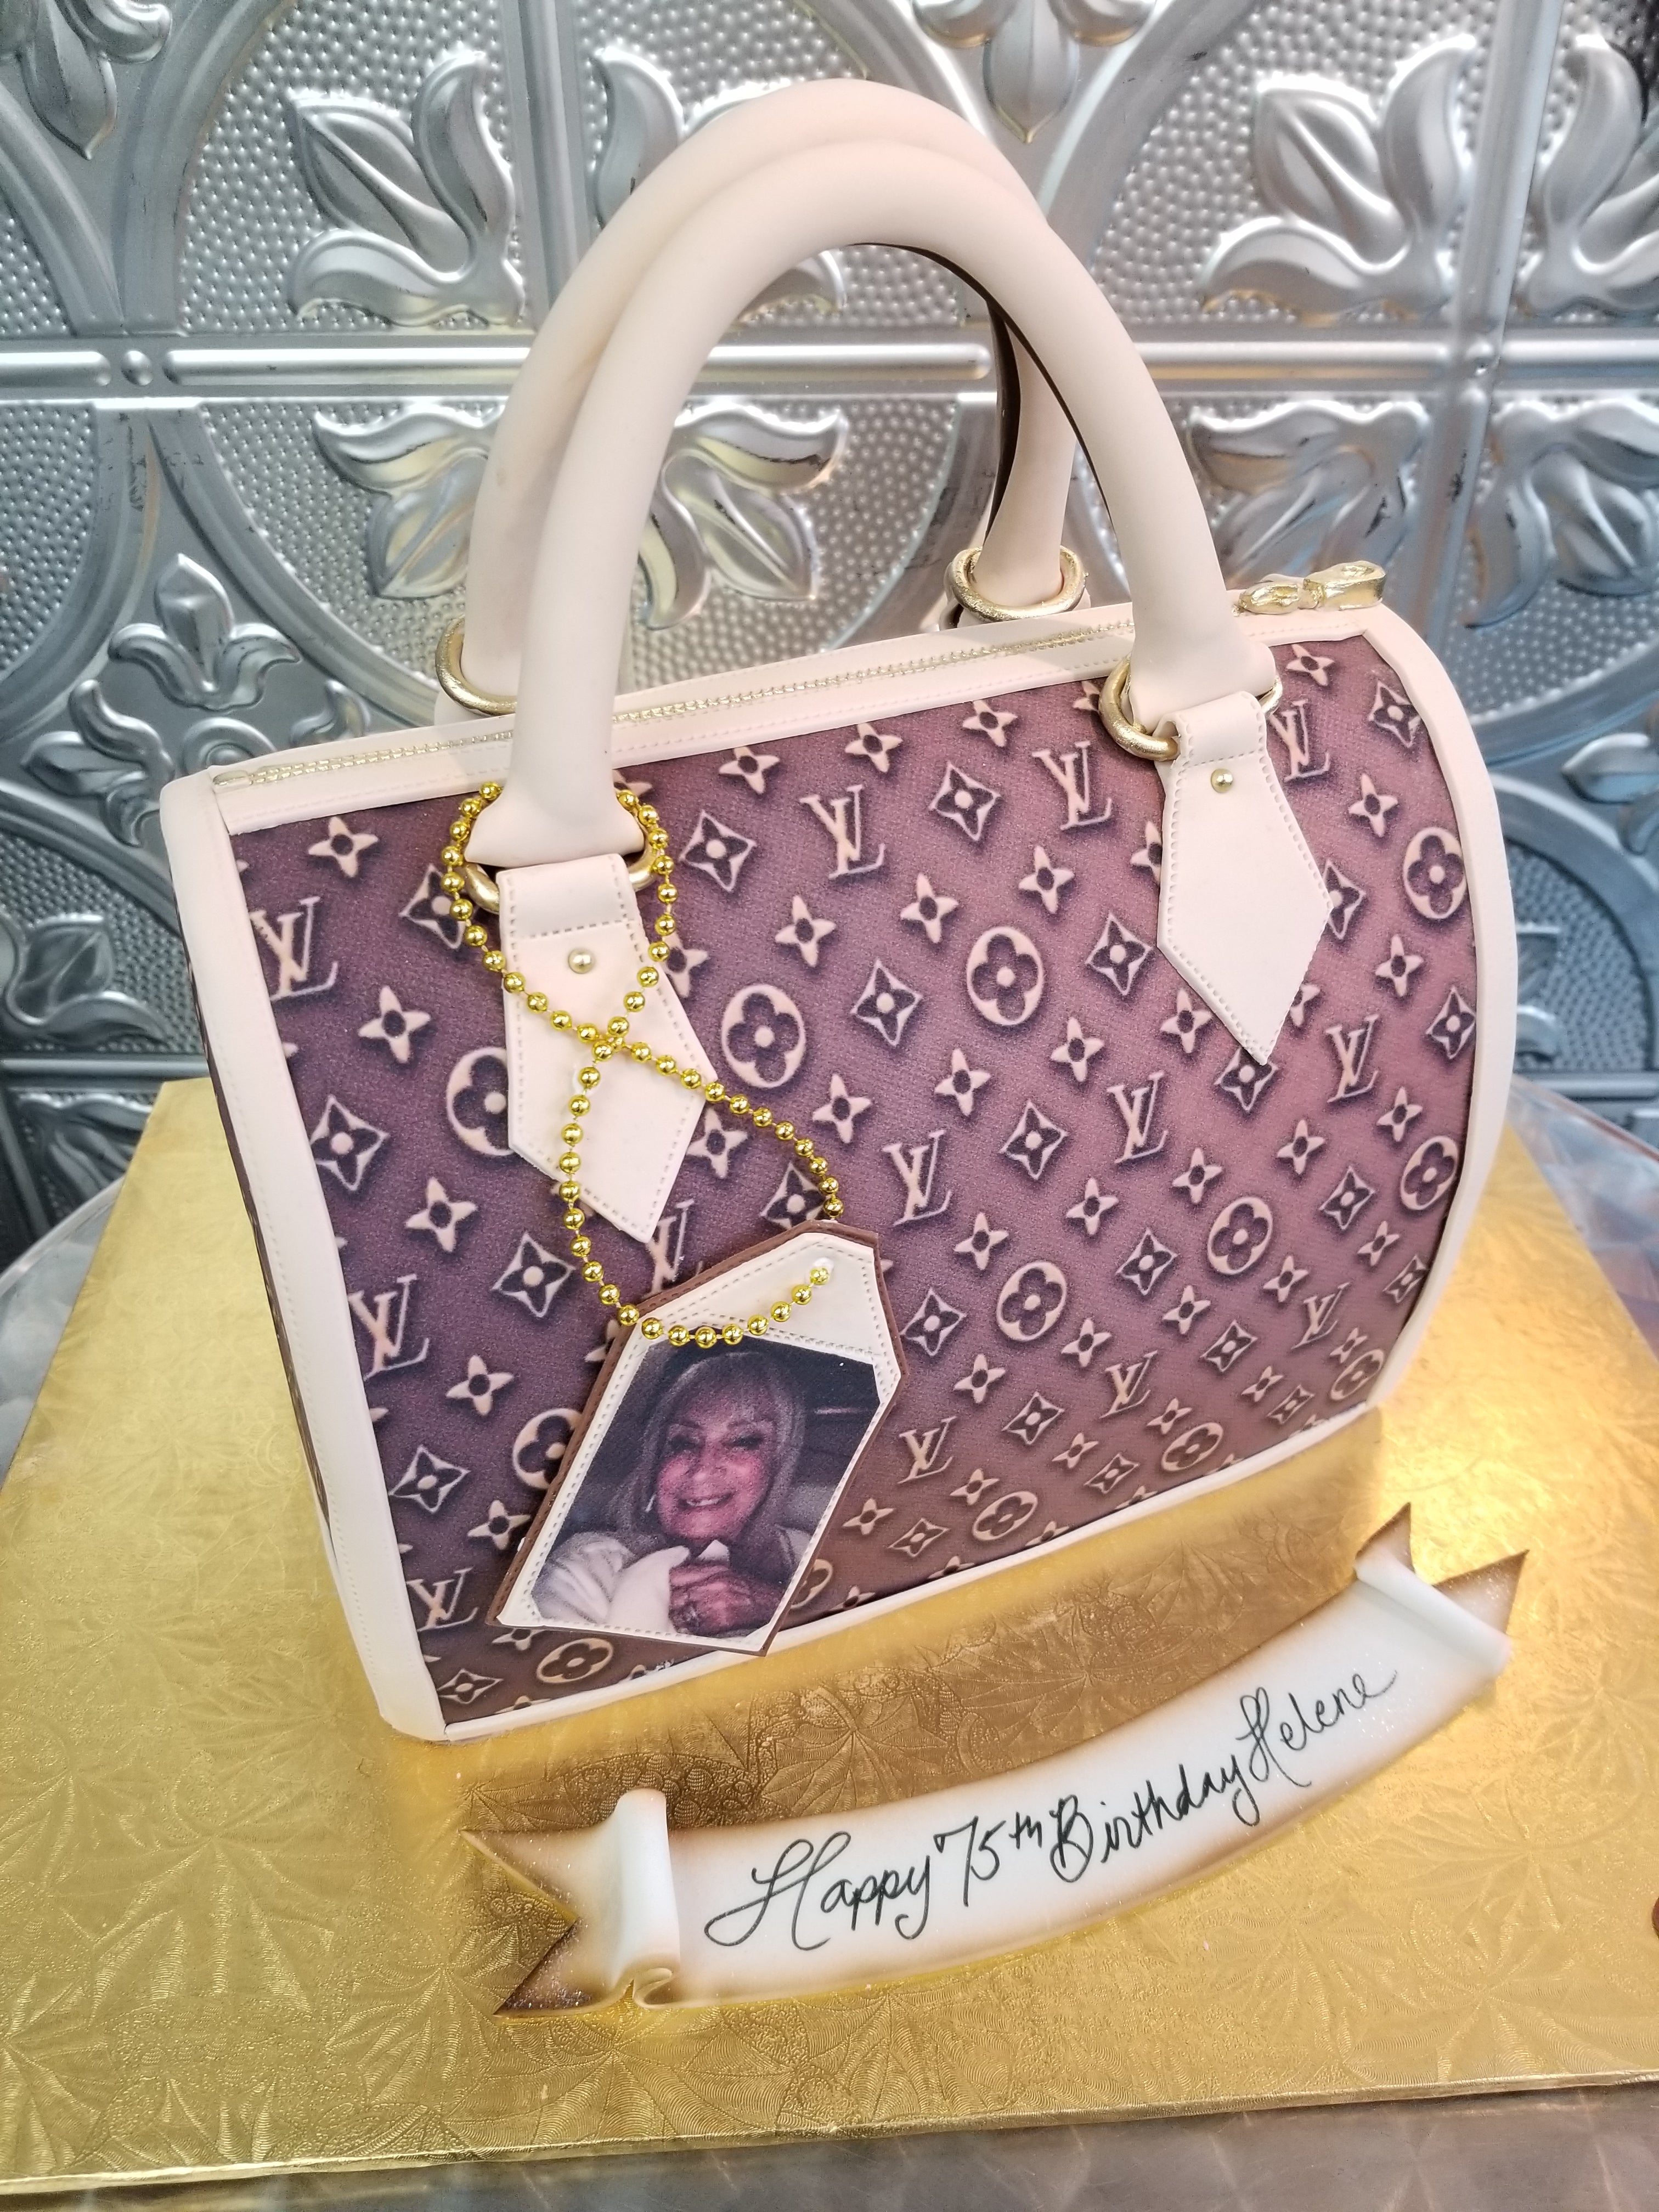 LV Handbag Cake – thedottedi.in